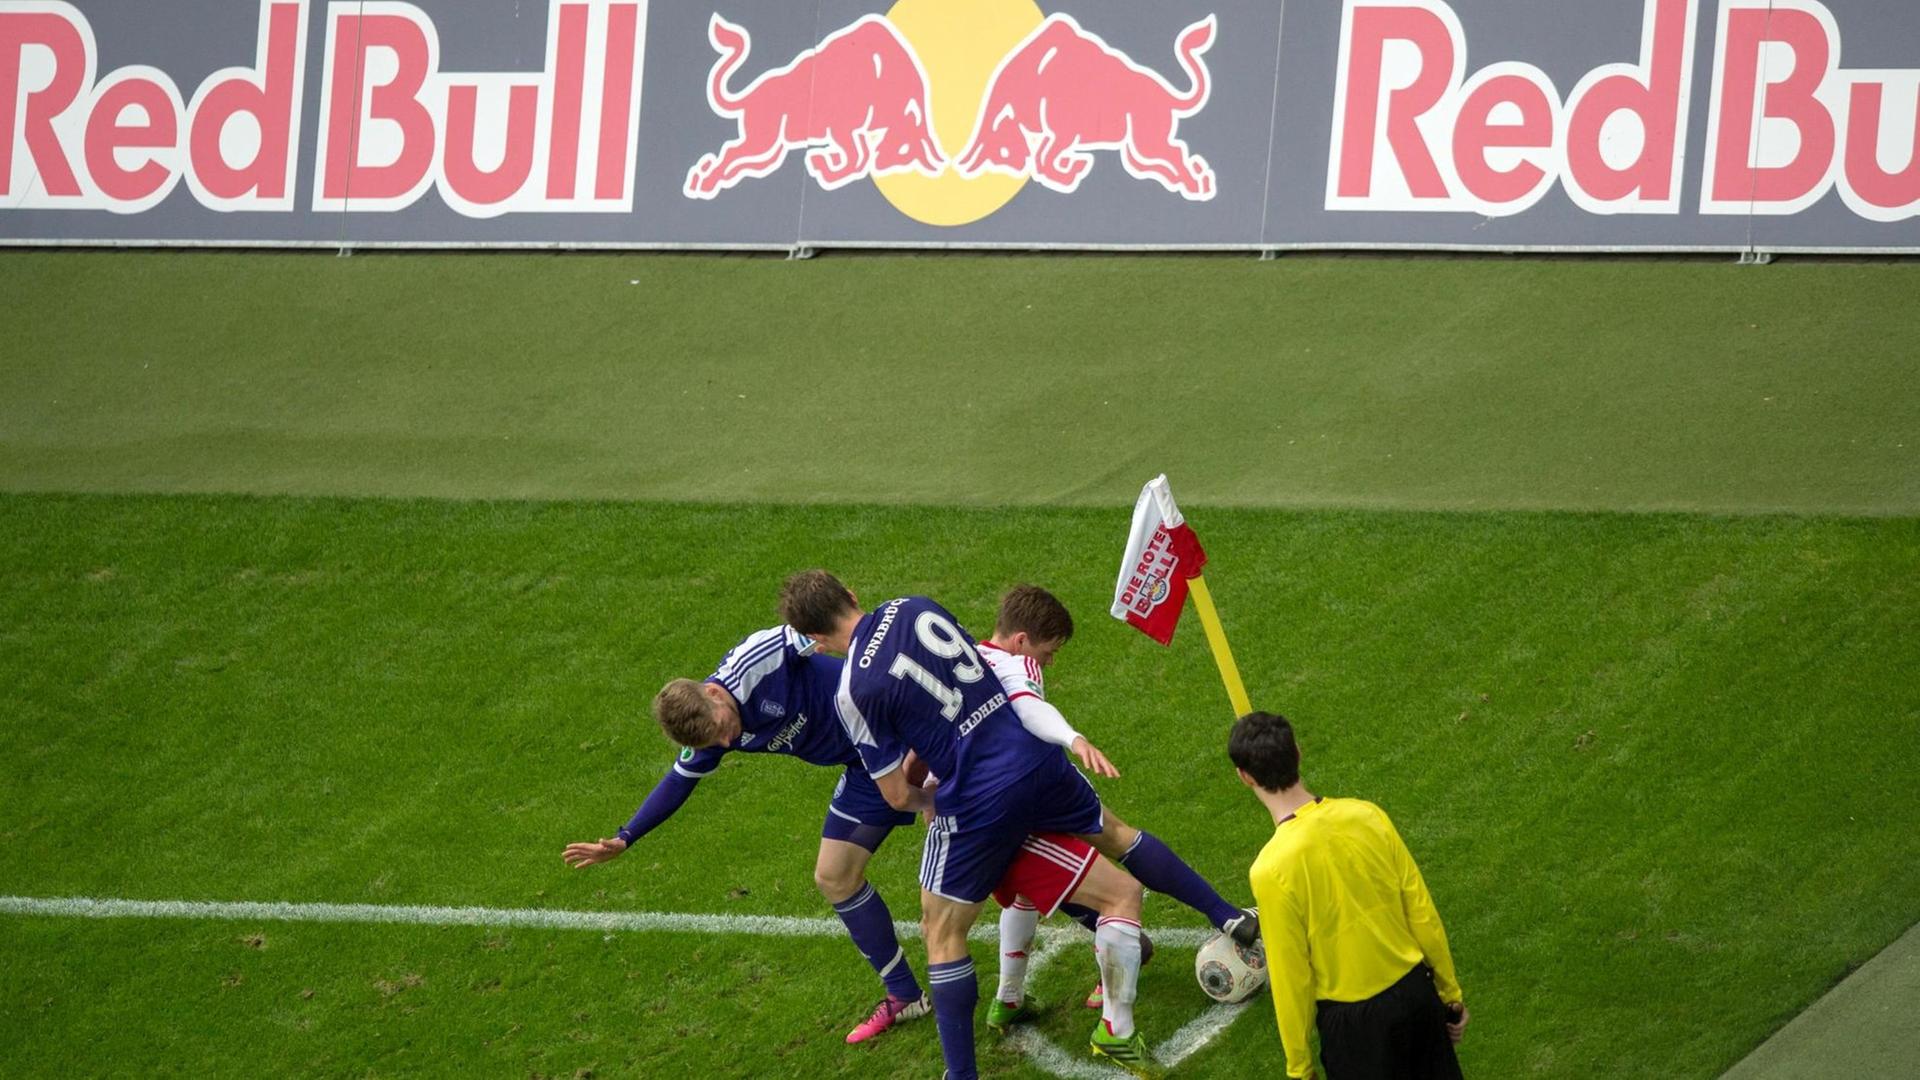 Leipzigs Dominik Kaiser (weiss) kämpft mit Osnabrücks Michael Blum (l) und Nicolas Feldhahn vor einer Red Bull Werbebande um den Ball.